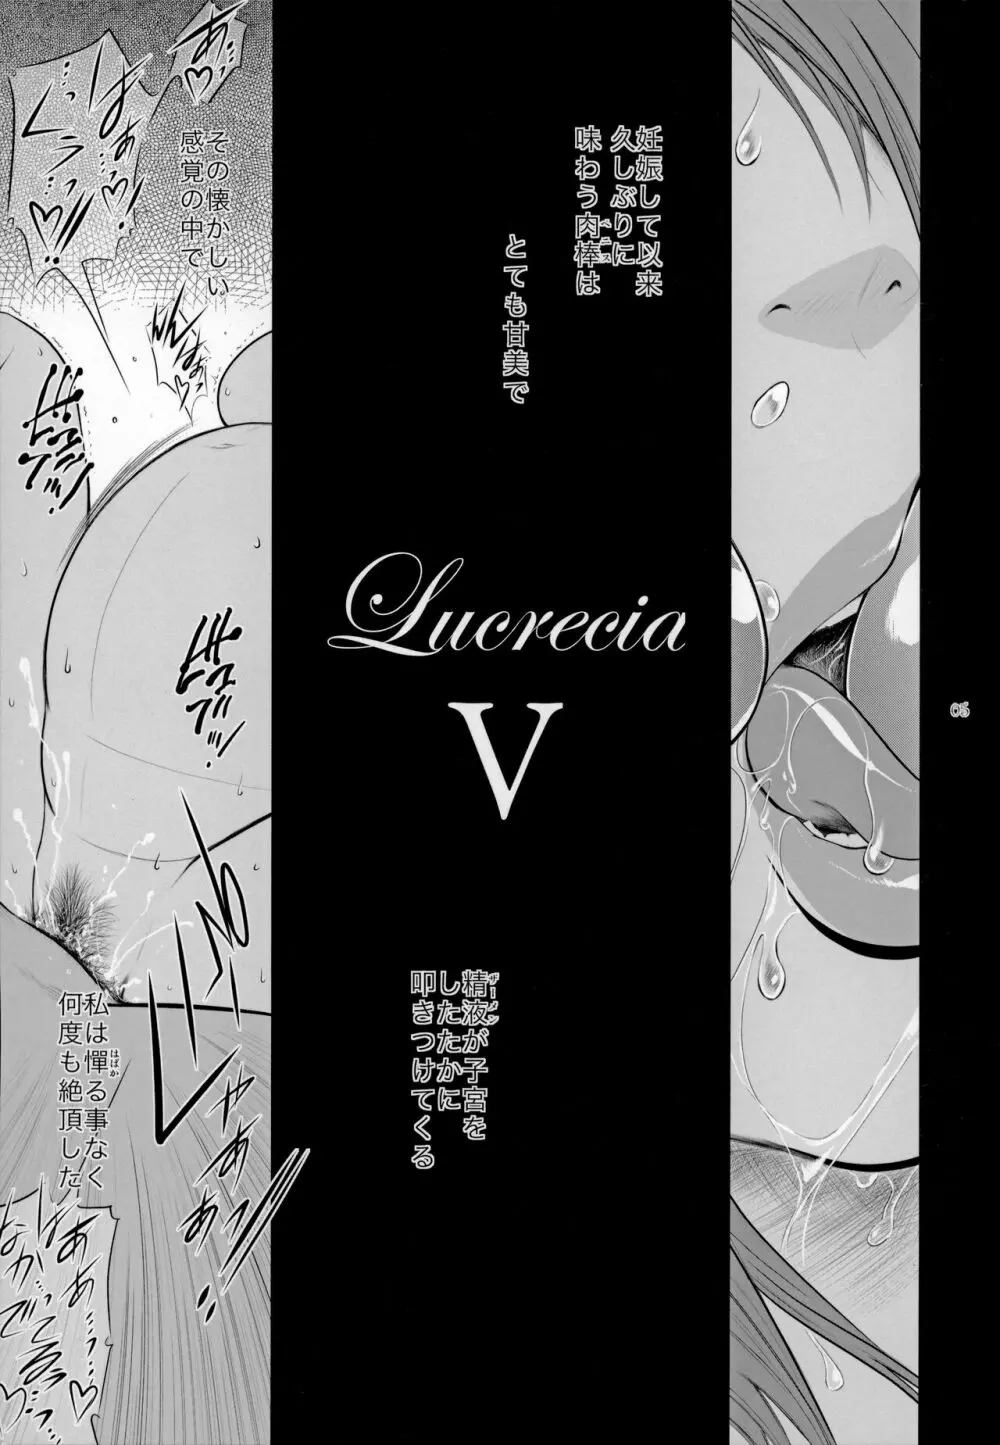 Lucrecia V - page4